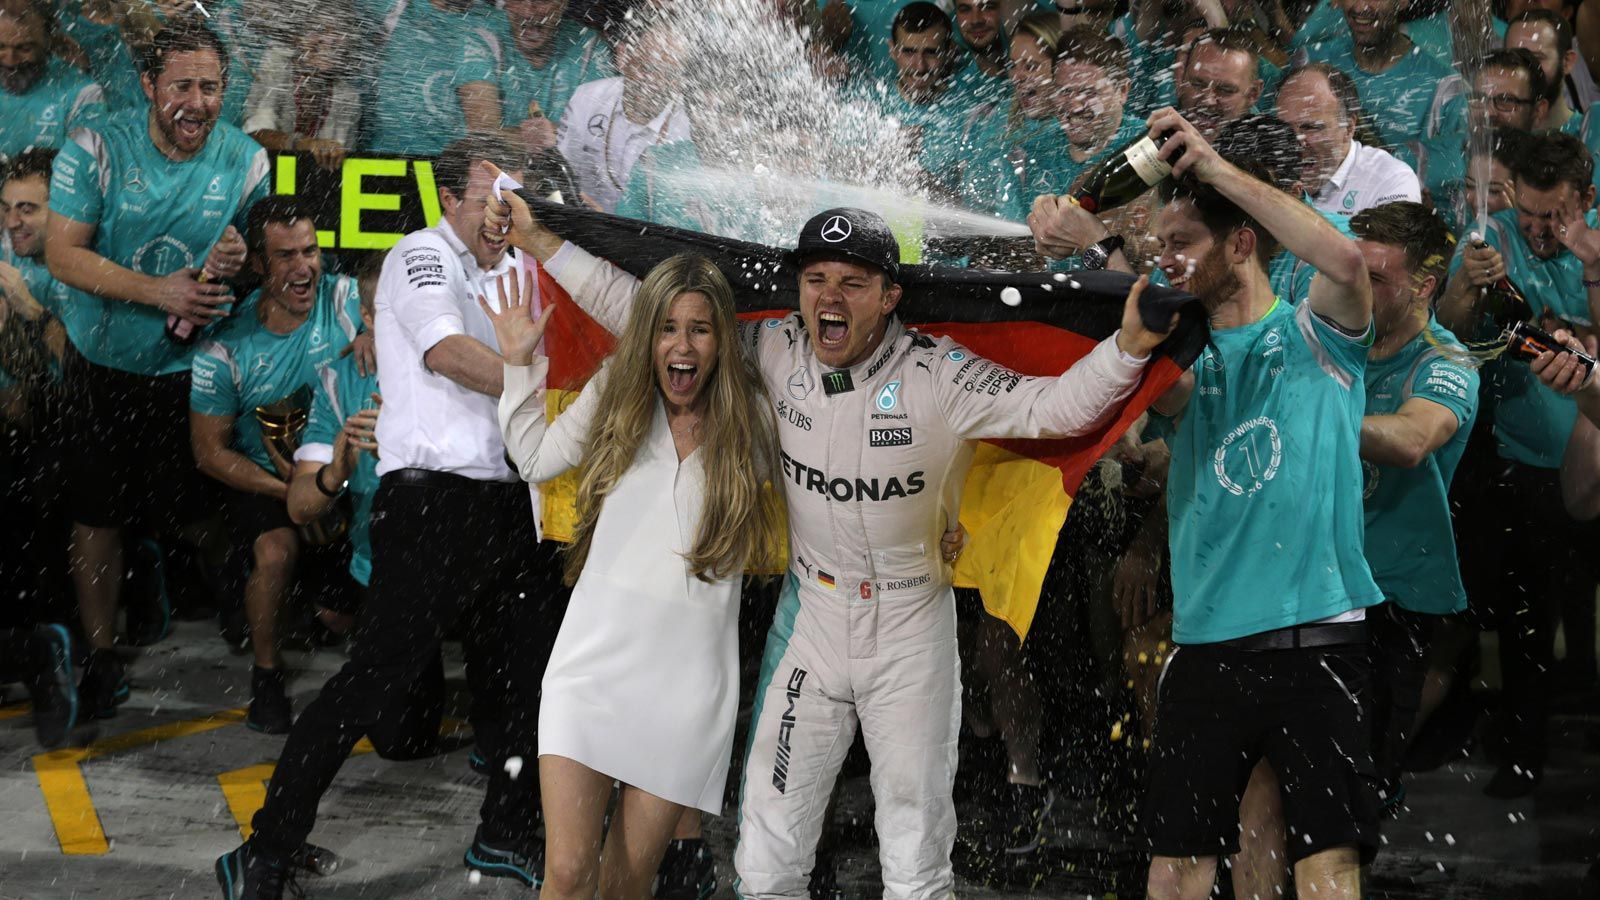 
                <strong>Nico Rosberg vs. Lewis Hamilton (2016)</strong><br>
                Nachdem er in der Saison 2015 die letzten drei Rennen gewonnen hatte, war die Mission für Nico Rosberg klar: 2016 den Teamkollegen schlagen und Weltmeister werden. Den Rückenwind nahm er mit und gewann auch die ersten vier Saisonrennen, bevor der Wahl-Monegasse eine Schwächephase durchlebte. Bei den nächsten acht Rennen stand er nur drei Mal auf dem Podium und errang nur einen Sieg. In dieser Zeit blühte sein Mercedes-Rivale Lewis Hamilton auf und verkürzte den Rückstand wieder. Im letzten Saisonrennen des Jahres in Abu Dhabi feierte der Brite zwar seinen vierten Sieg am Stück, doch Rosberg genügte der zweite Platz für den Titel. Kurze Zeit später trat der frischgekürte Champion zurück.
              